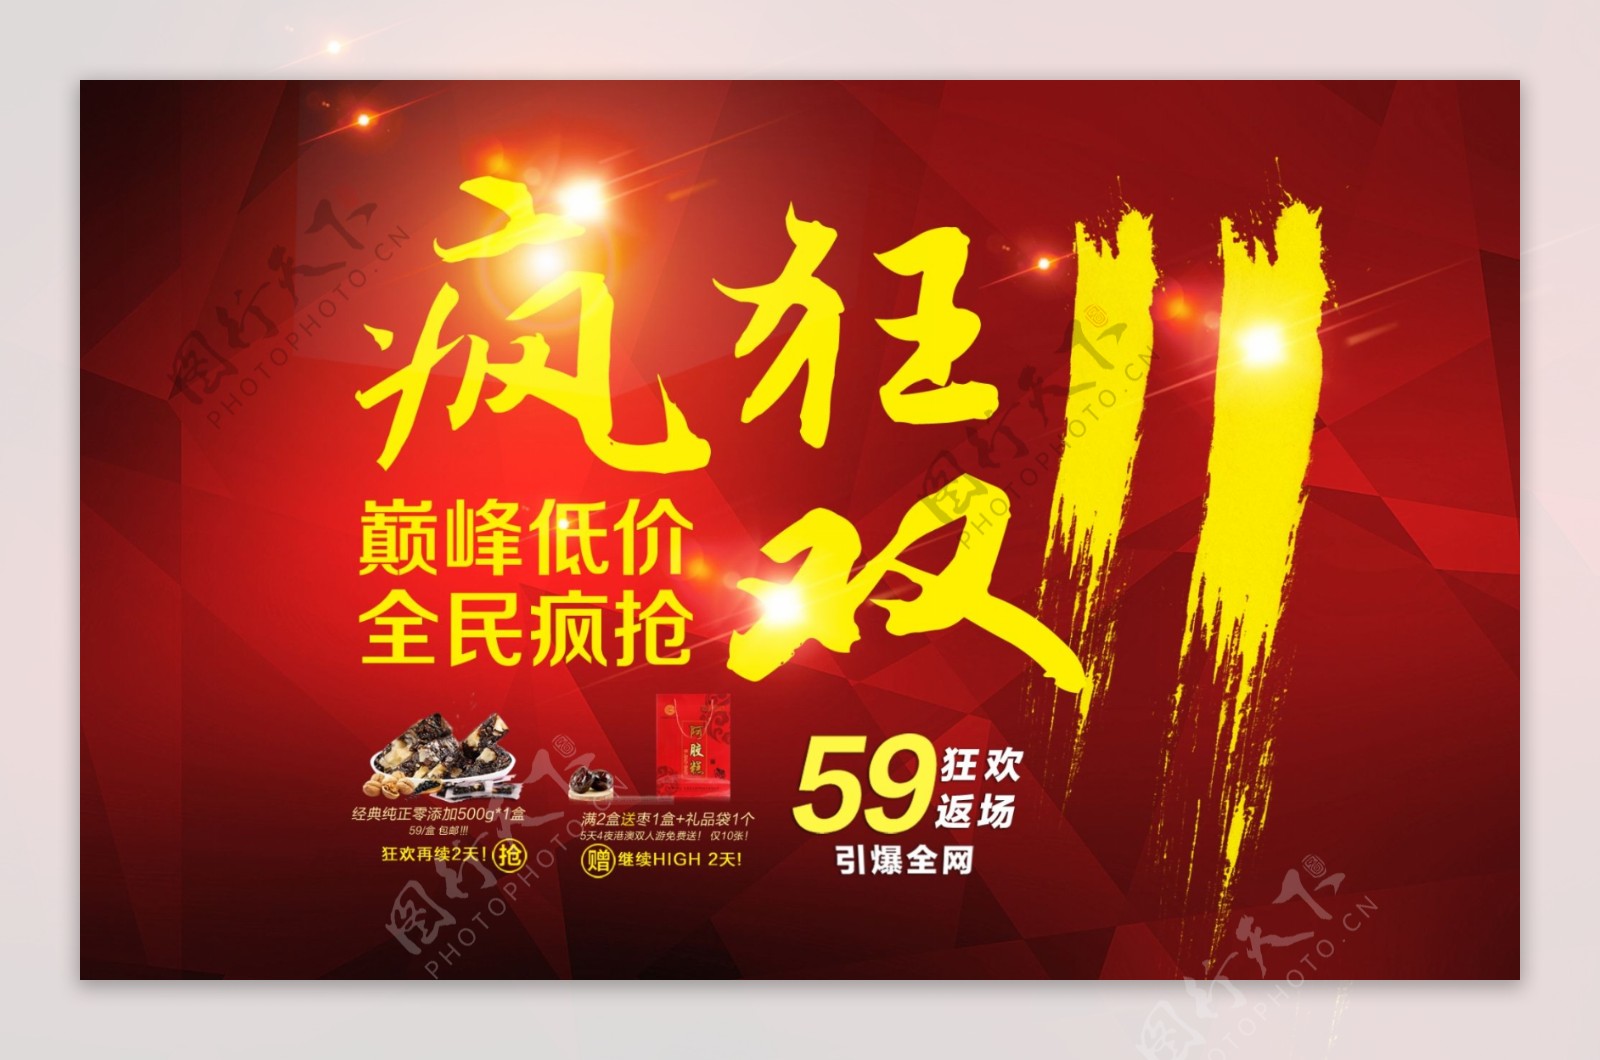 双11购物狂欢节2015促销海报